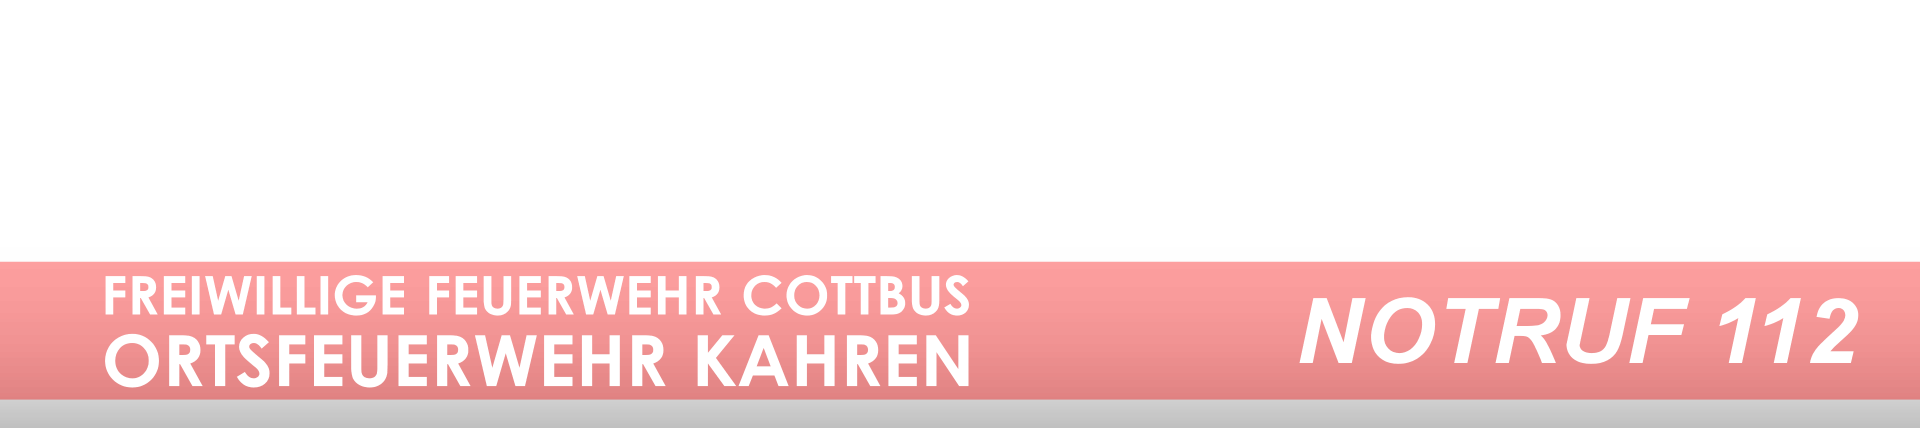 Freiwillige Feuerwehr Stadt Cottbus, Ortsfeuerwehr Kahren